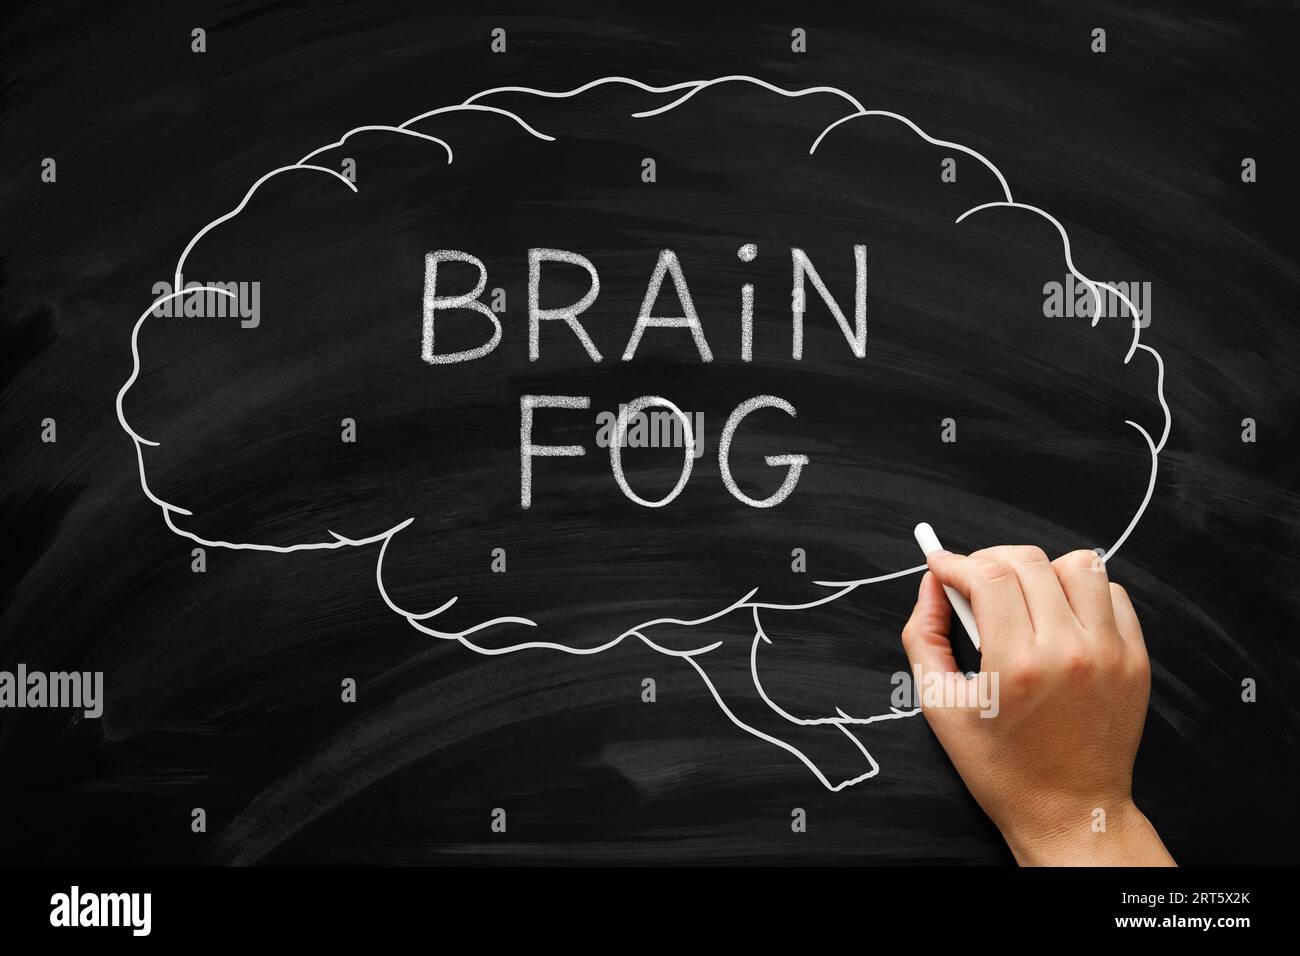 Dessin à la main concept de brouillard cérébral sur les problèmes de mémoire, le manque de clarté mentale et une incapacité à se concentrer. Banque D'Images